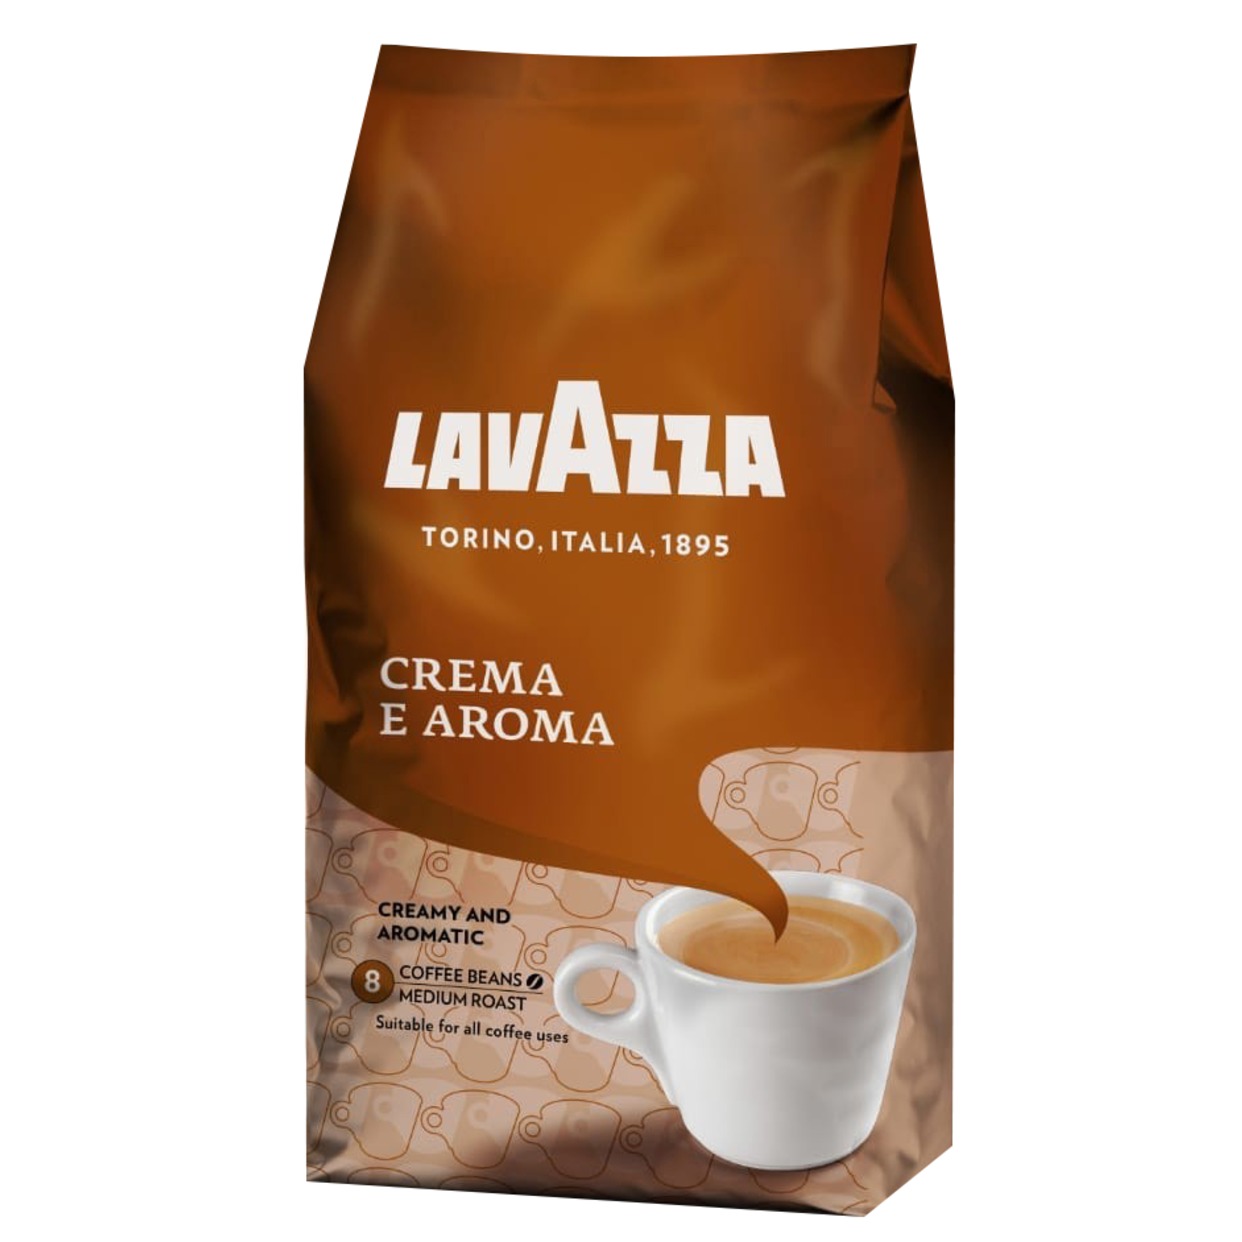 Кофе в зернах Lavazza Crema e Aroma 1кг по акции в Пятерочке